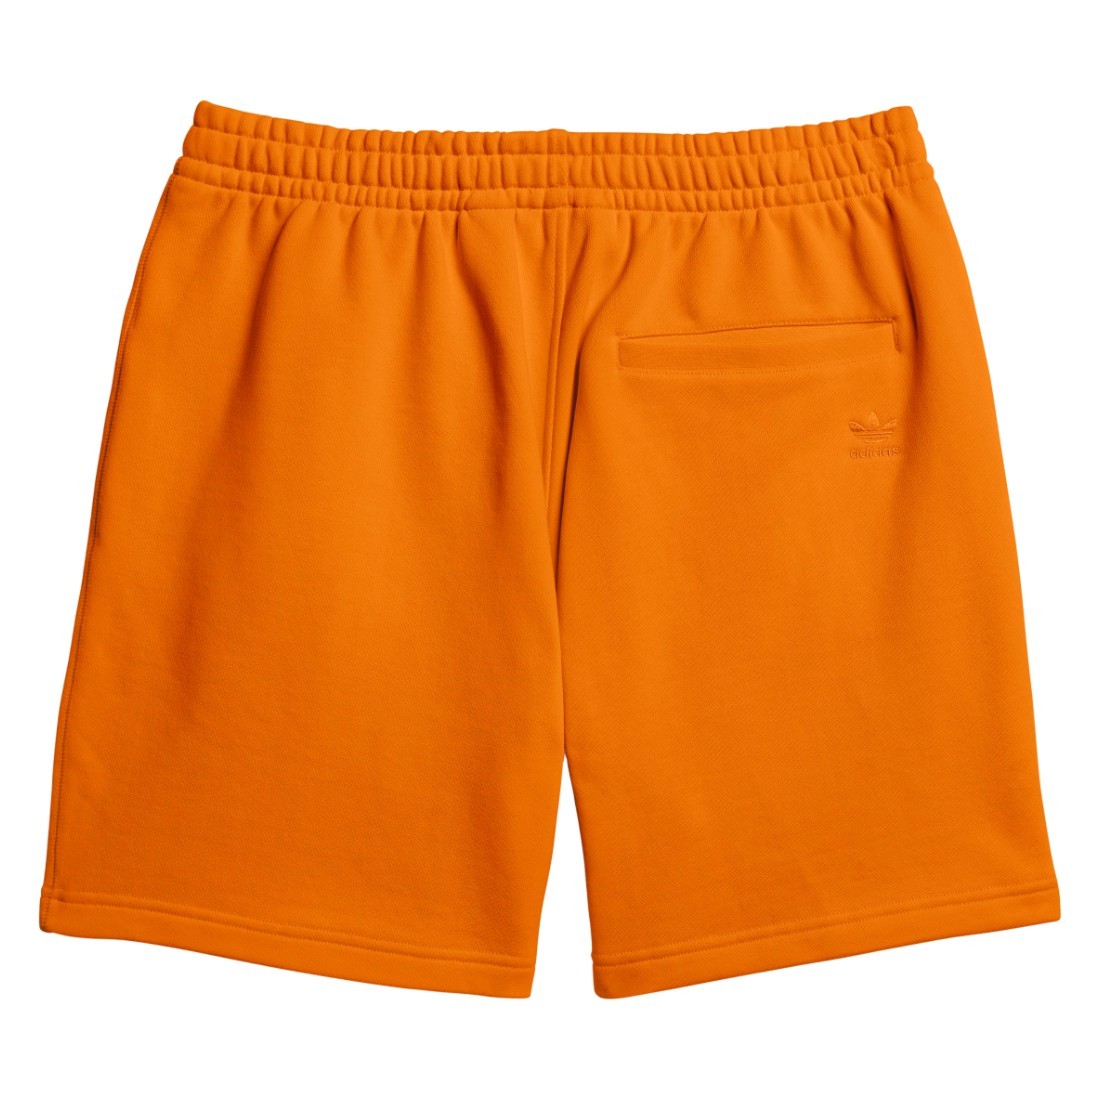 Шорты адидас оранжевые. Adidas шорты оранжевые. Оранжевые шорты подростковые адидас. Оранжевые шорты с панамкой. Basic short